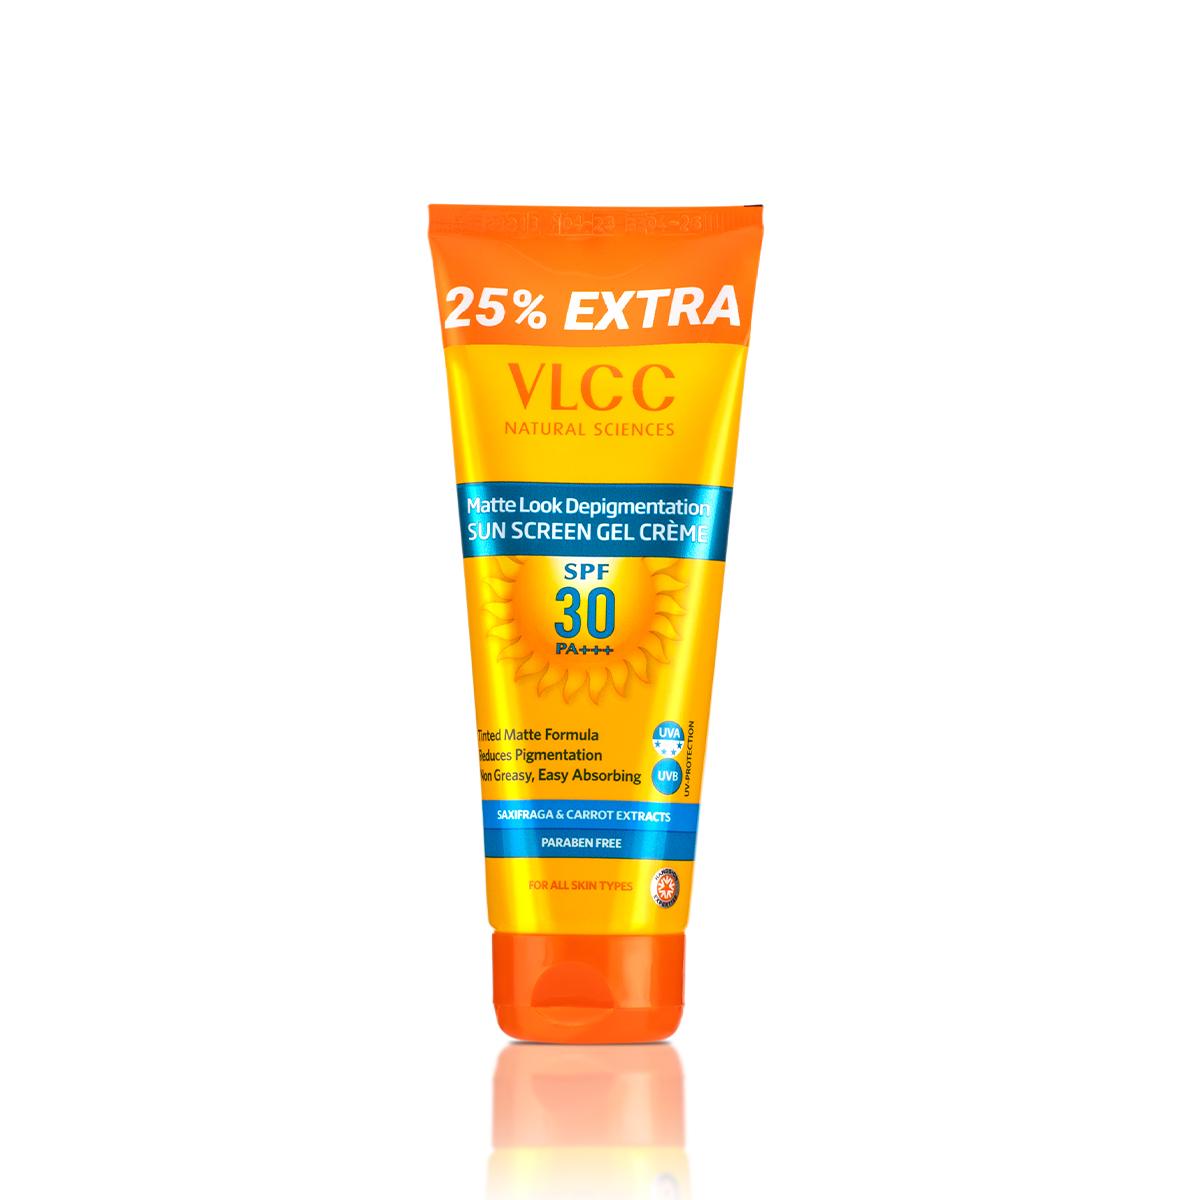 VLCC Matte Look SPF 30 PA ++ Sunscreen Gel Crèam - 100 g with 25 g Extra